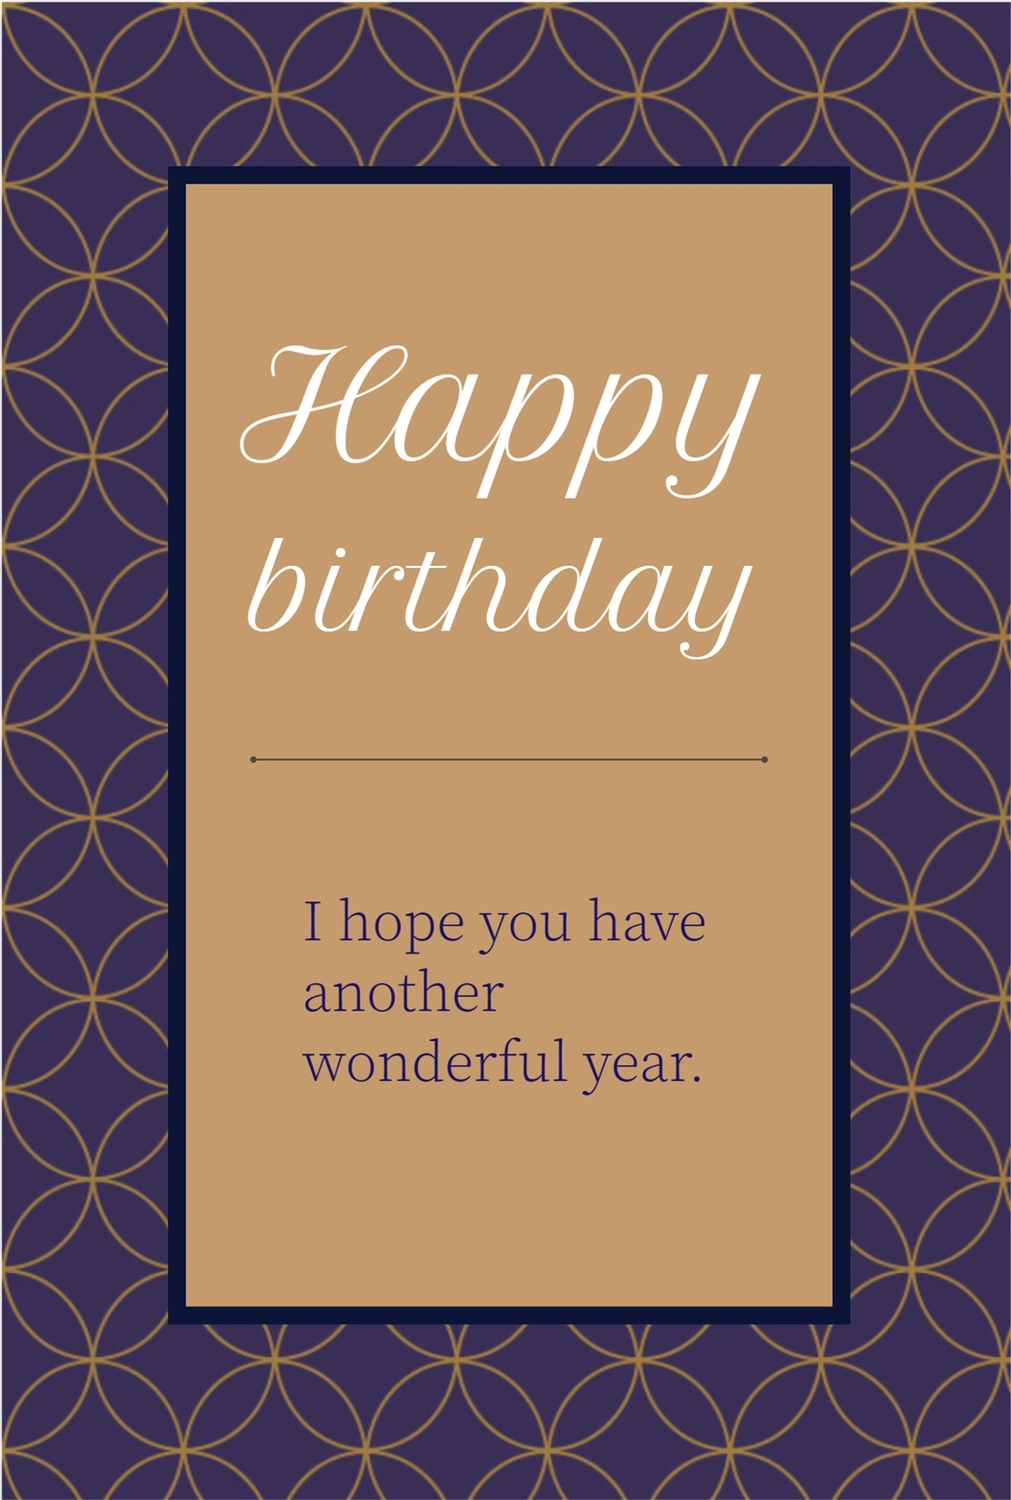 モダンな誕生日カード, 카드, 만들기, 디자인, 생일 카드 템플릿